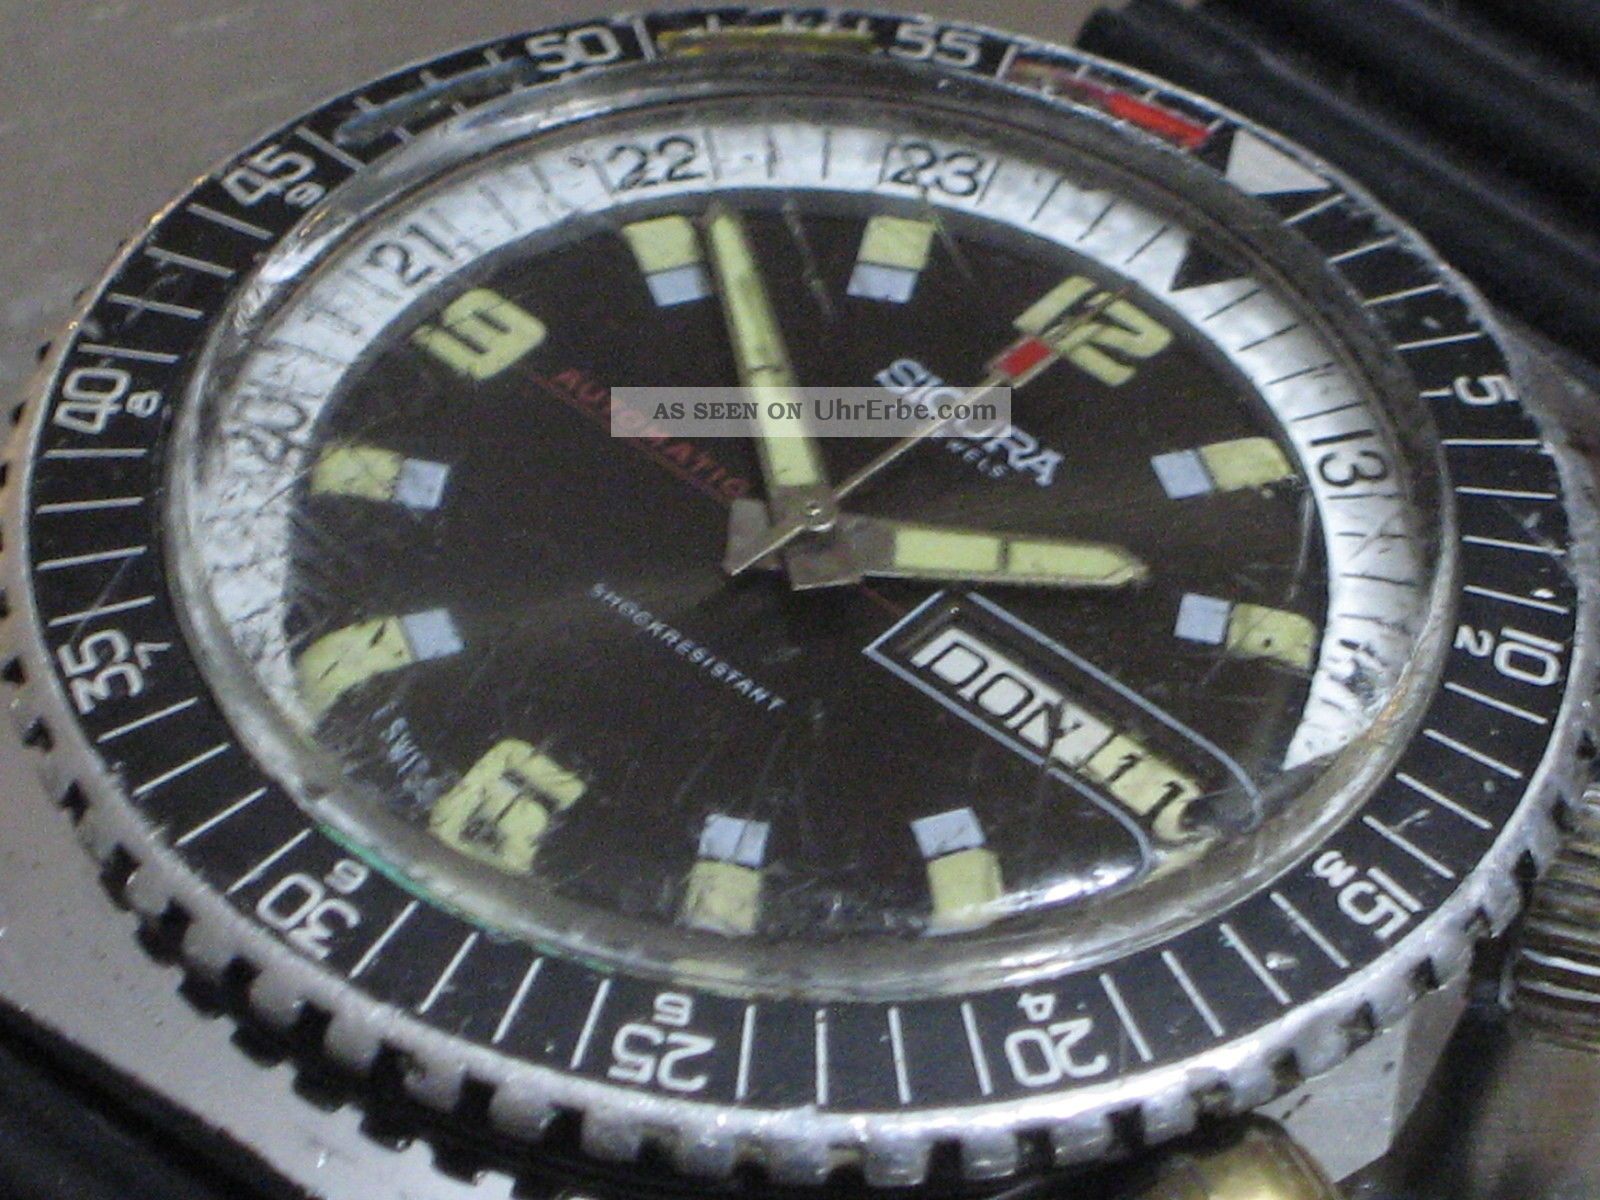 Sicura Automatic Breitling Diver17 Jewels 70er Herren - Armbanduhr Taucheruhr Mech Armbanduhren Bild